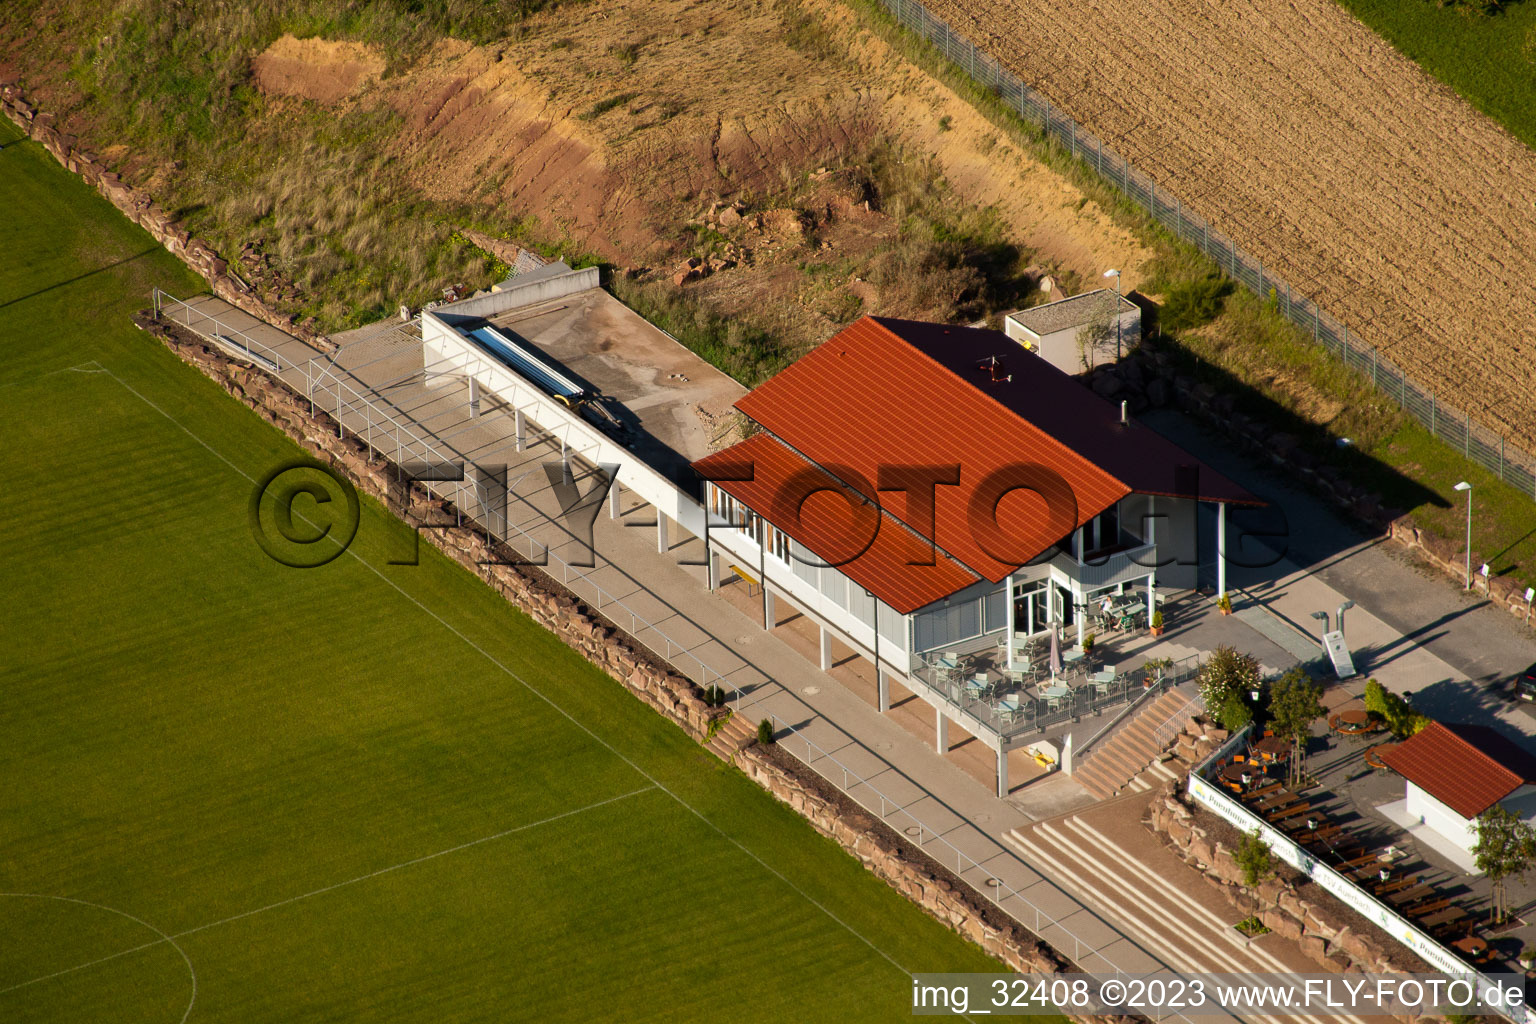 Stade Pneuhage à le quartier Auerbach in Karlsbad dans le département Bade-Wurtemberg, Allemagne depuis l'avion